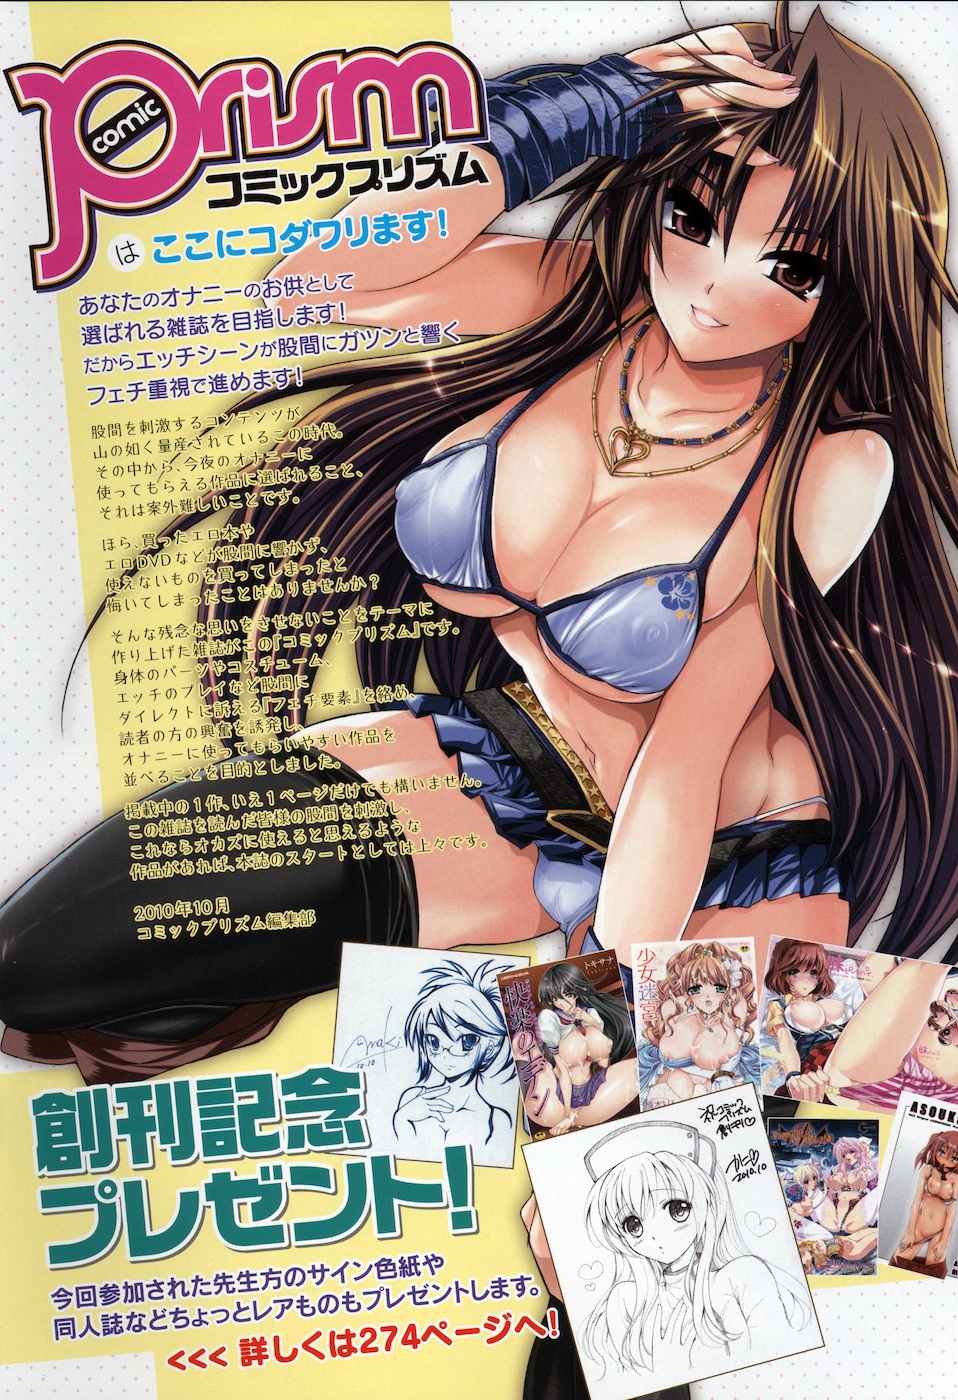 コミックプリズム Vol.1 2010 WINTER